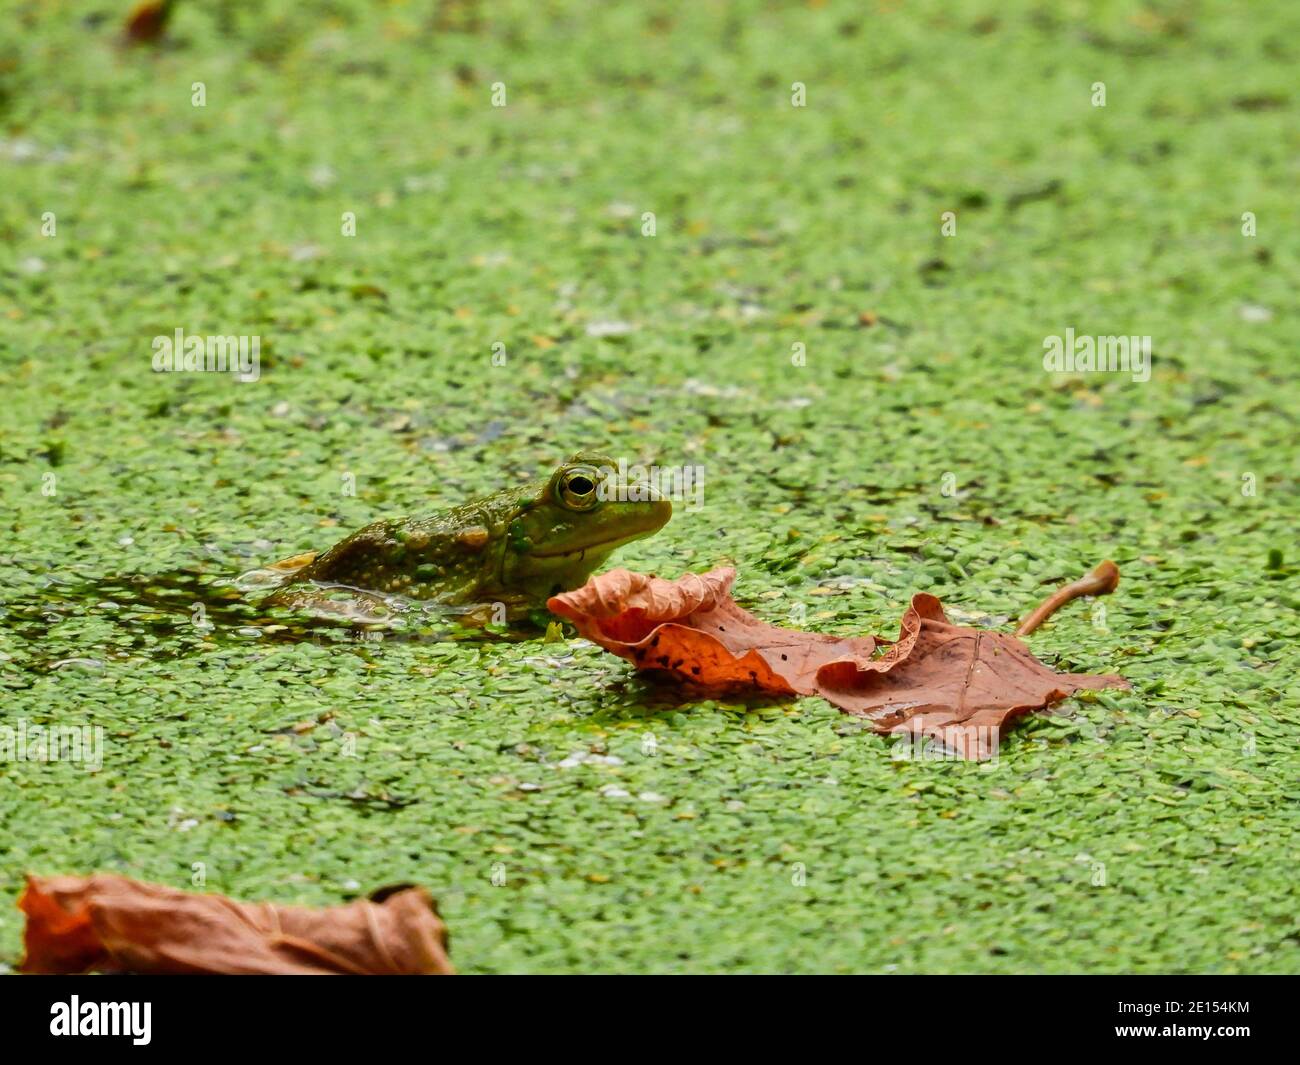 Frosch in einem Teich: Ein Bullfrog sitzt meistens sichtbar in einem Teich mit einem blühenden Entenkraut Wachstum und einige Herbstblätter sitzen auf der Entenkraut und Wasser Stockfoto